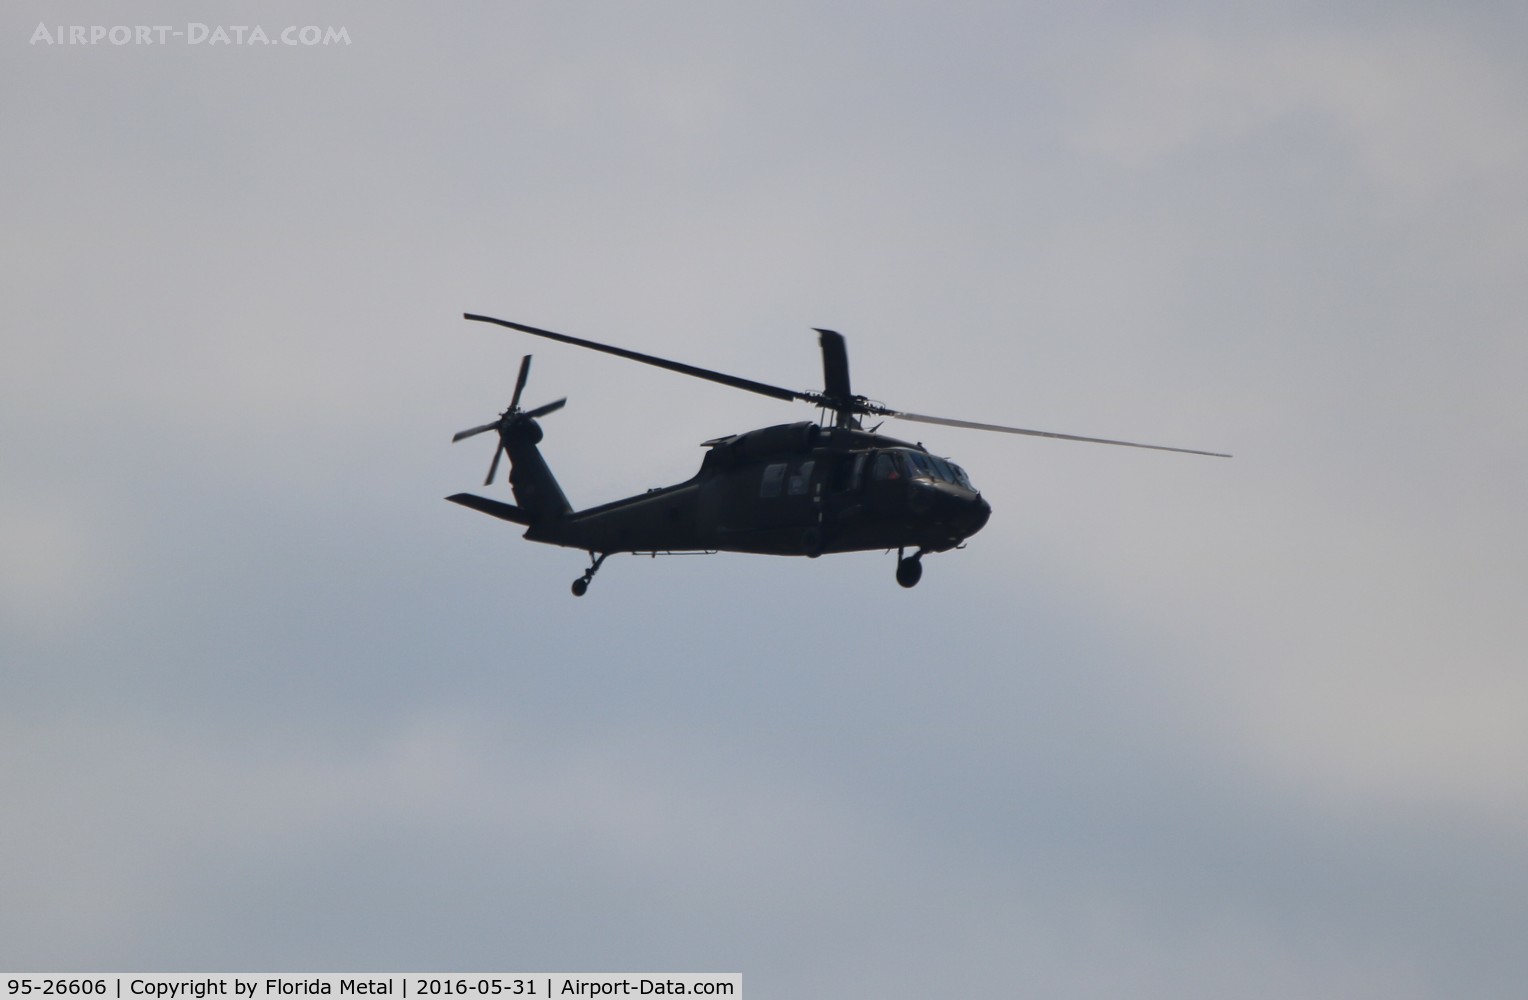 95-26606, 1995 Sikorsky UH-60L Black Hawk C/N 70-2123, UH-60L flying over Atlanta